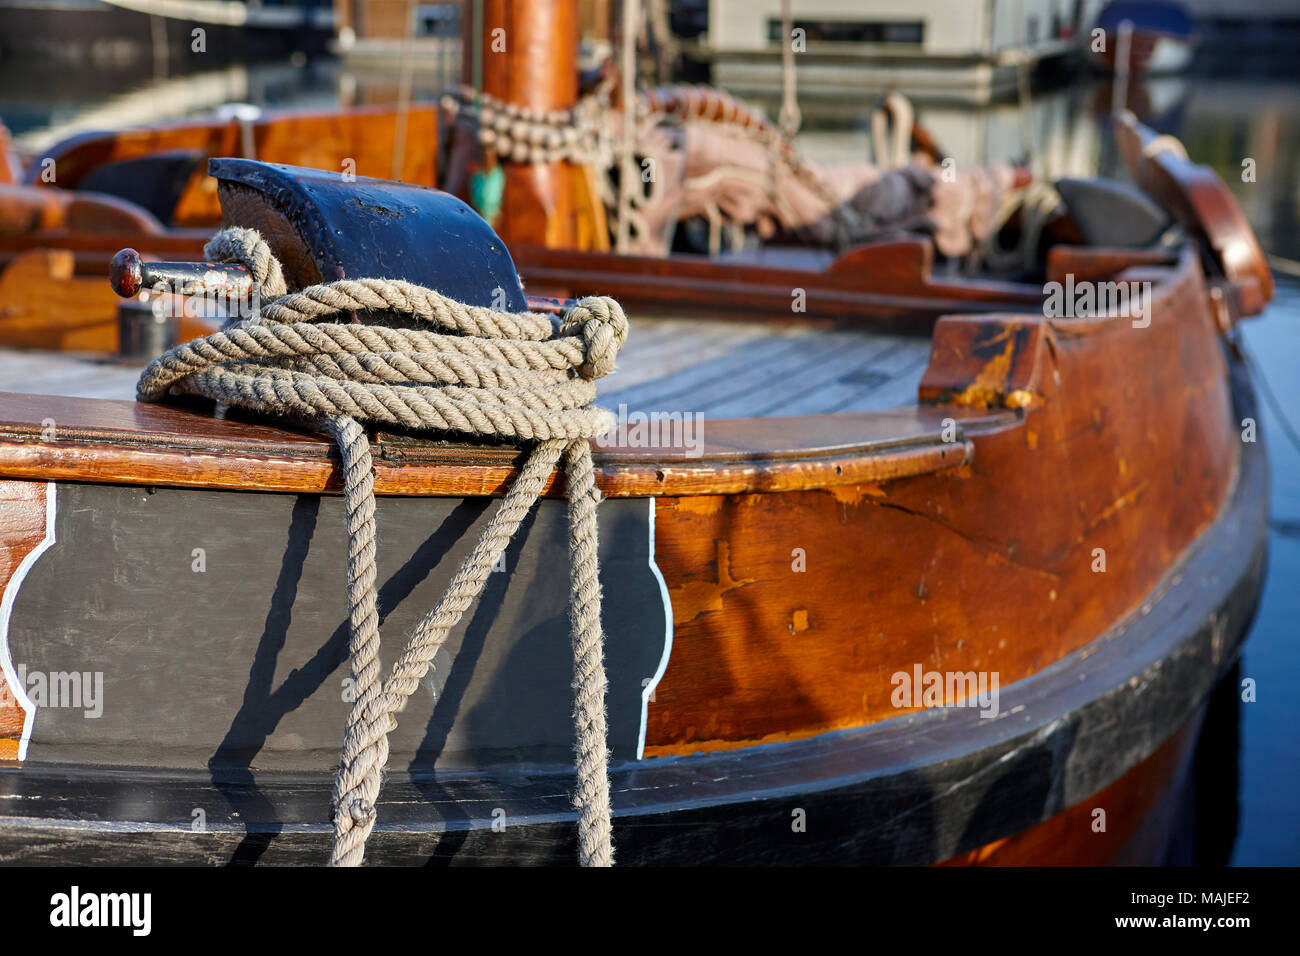 Immagine astratta della vela olandese Tjalk ad Amsterdam, nei Paesi Bassi, Olanda Foto Stock